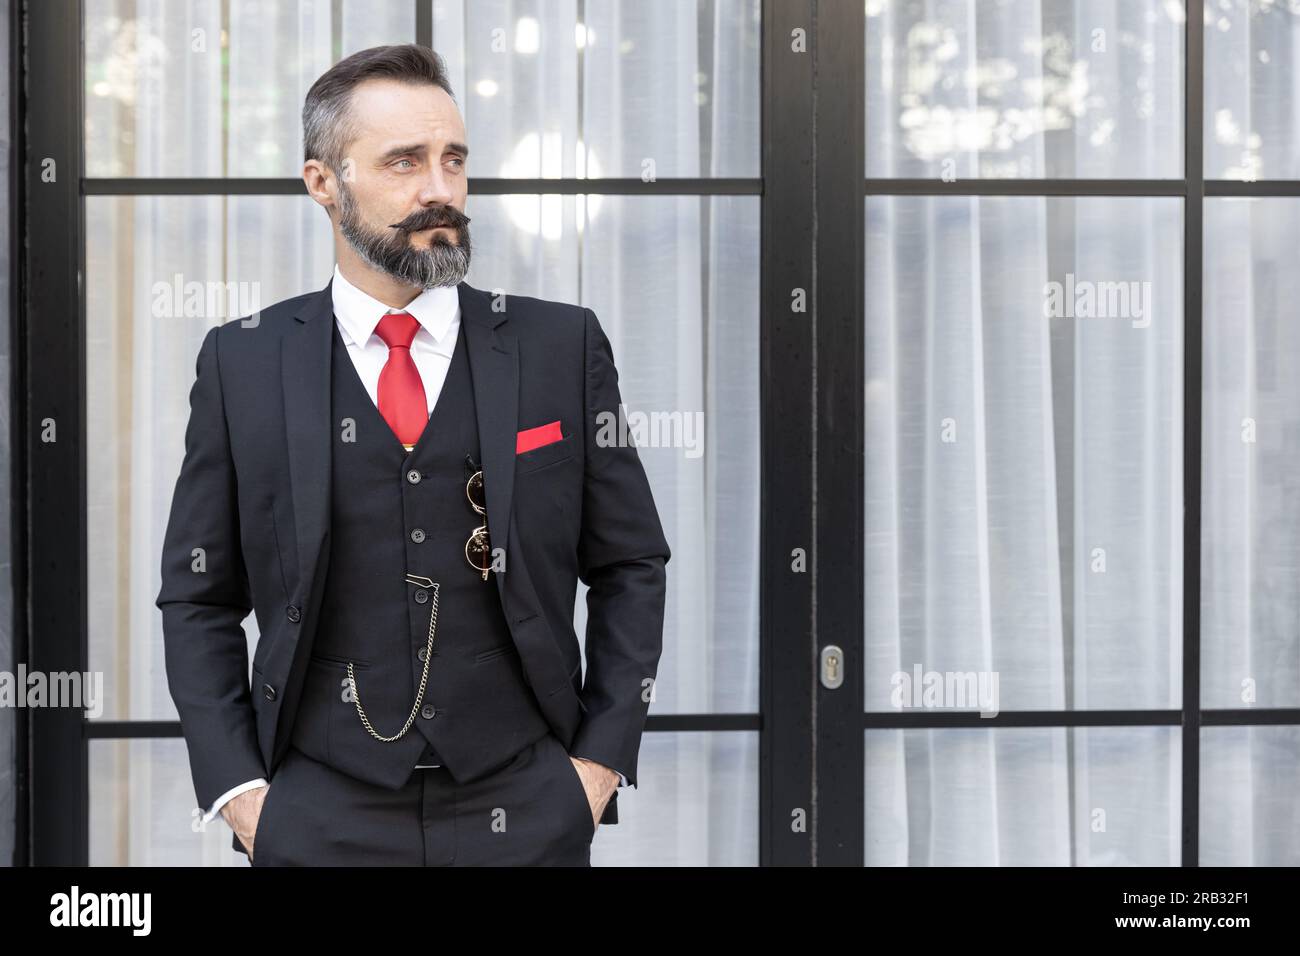 Portrait lateinamerikanischer Schnurrbart Herren Mode Mode Dressing Smoking Jacke Anzug elegant attraktives Modell. Geschäftsmann Boss Anwalt Latino steht Stockfoto